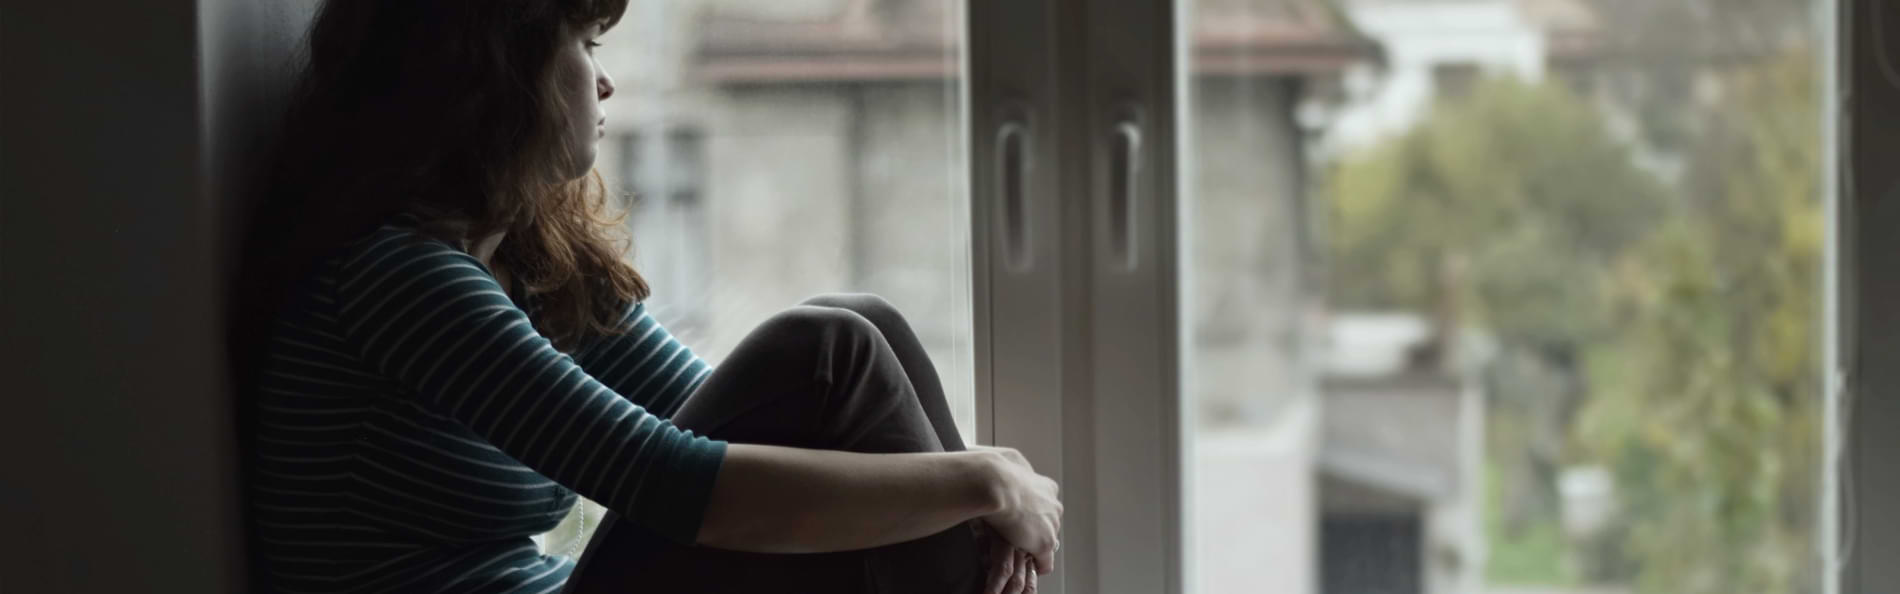 Eine junge Frau sitzt auf einer Fensterbank und schaut aus dem Fenster